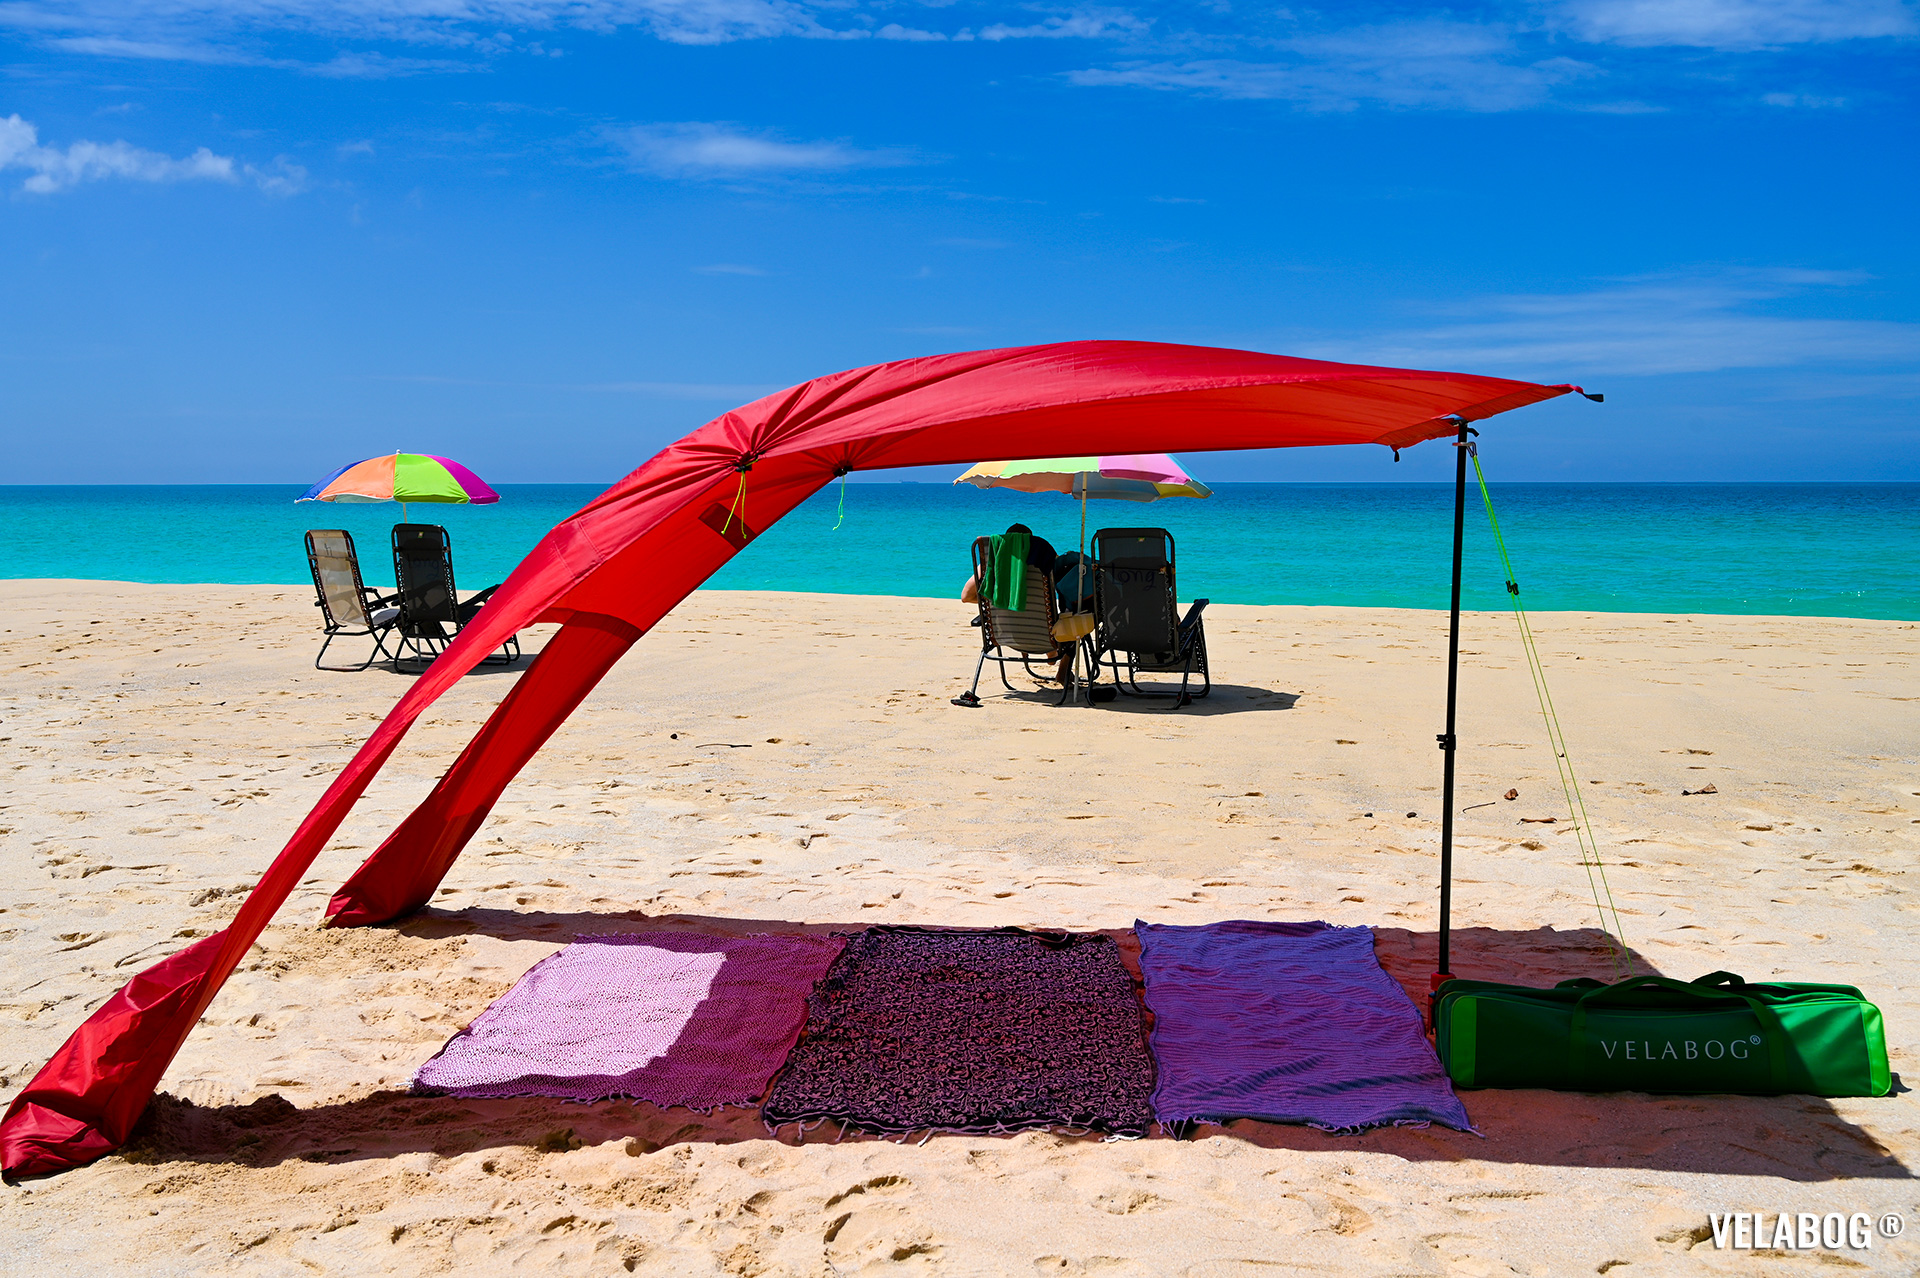 Tenda da spiaggia Velabog Breeze, rossa. La migliore protezione dal sole. Grande ombra. Confronto con gli ombrelloni.